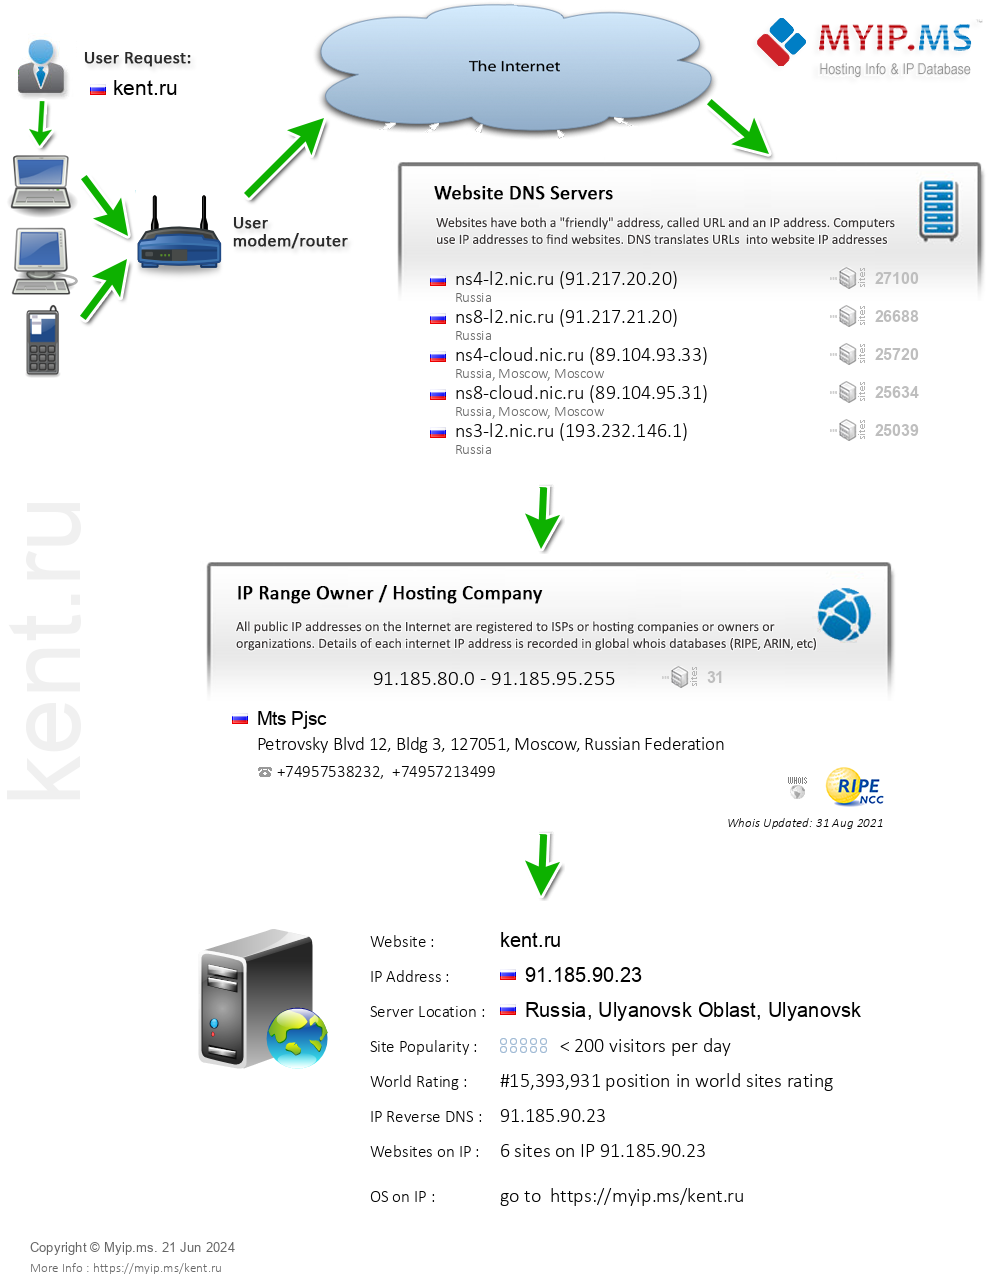 Kent.ru - Website Hosting Visual IP Diagram